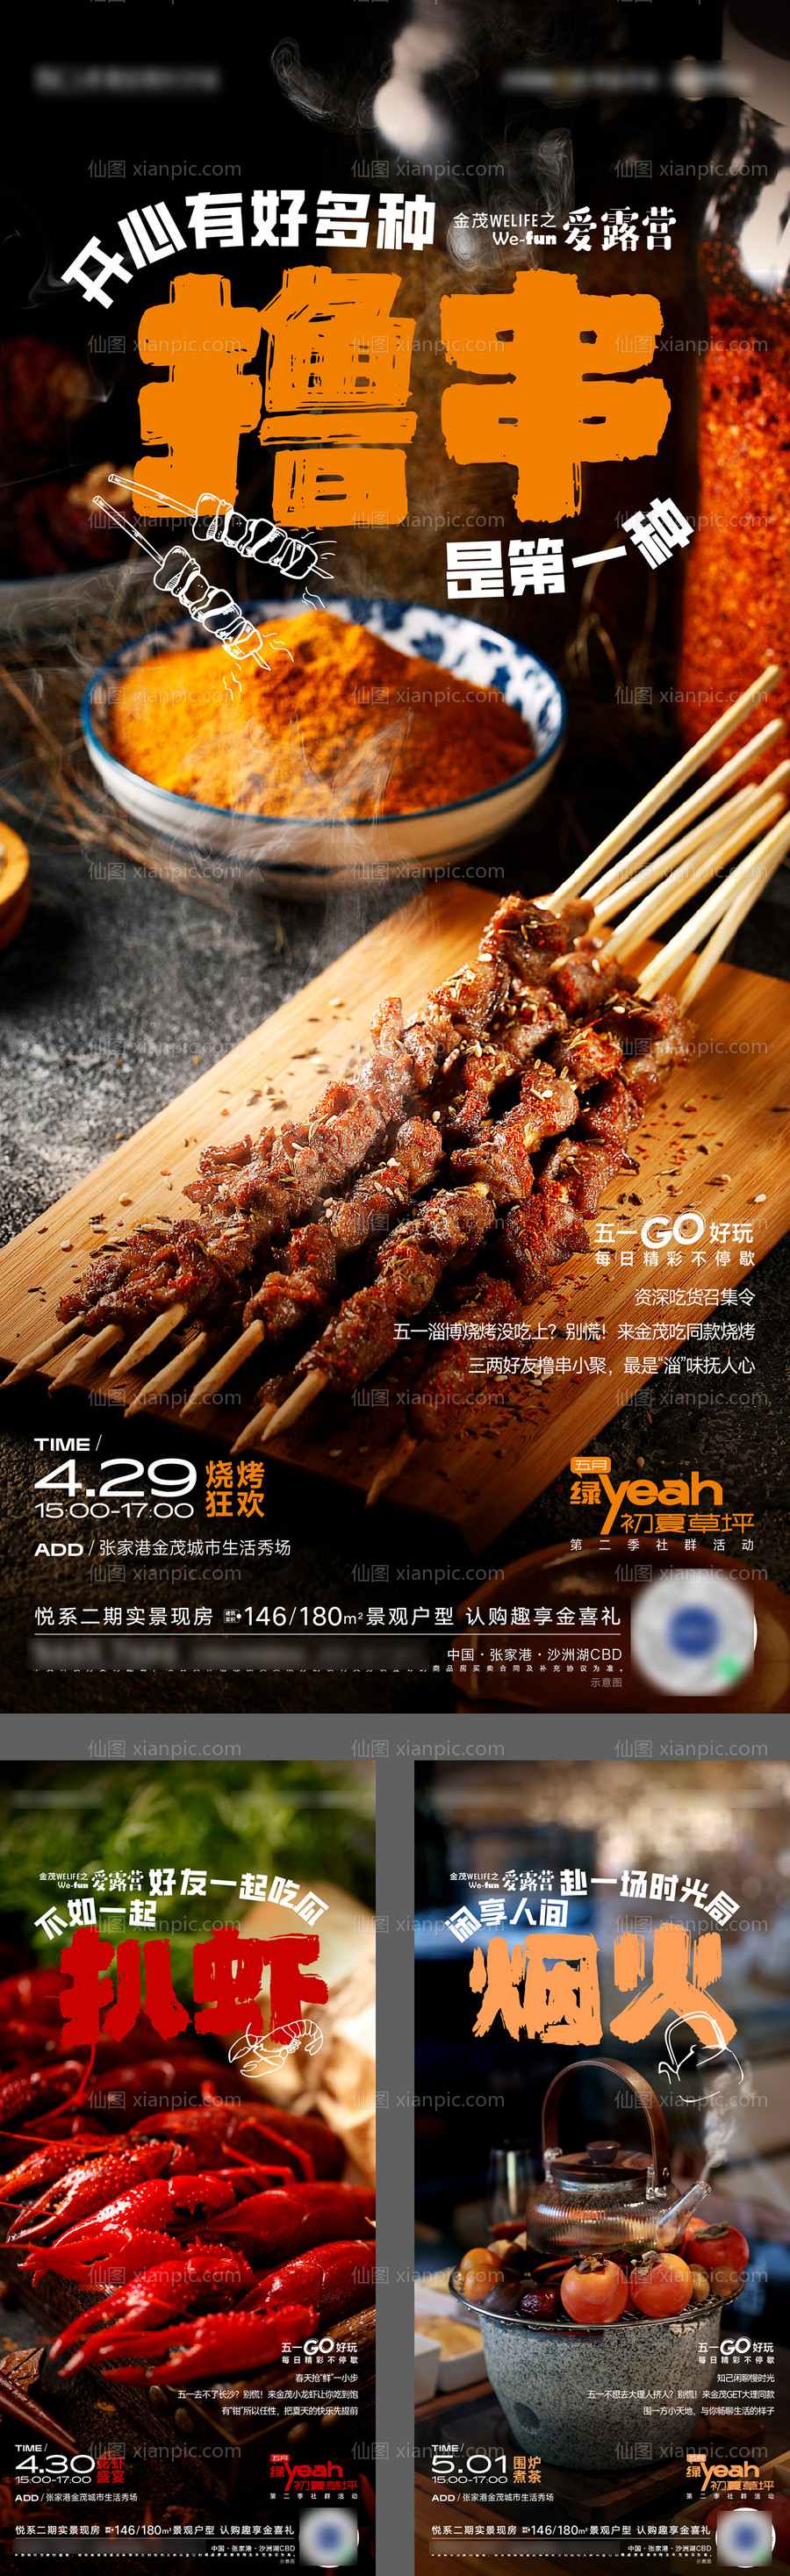 素材乐-撸串龙虾围炉煮茶活动海报